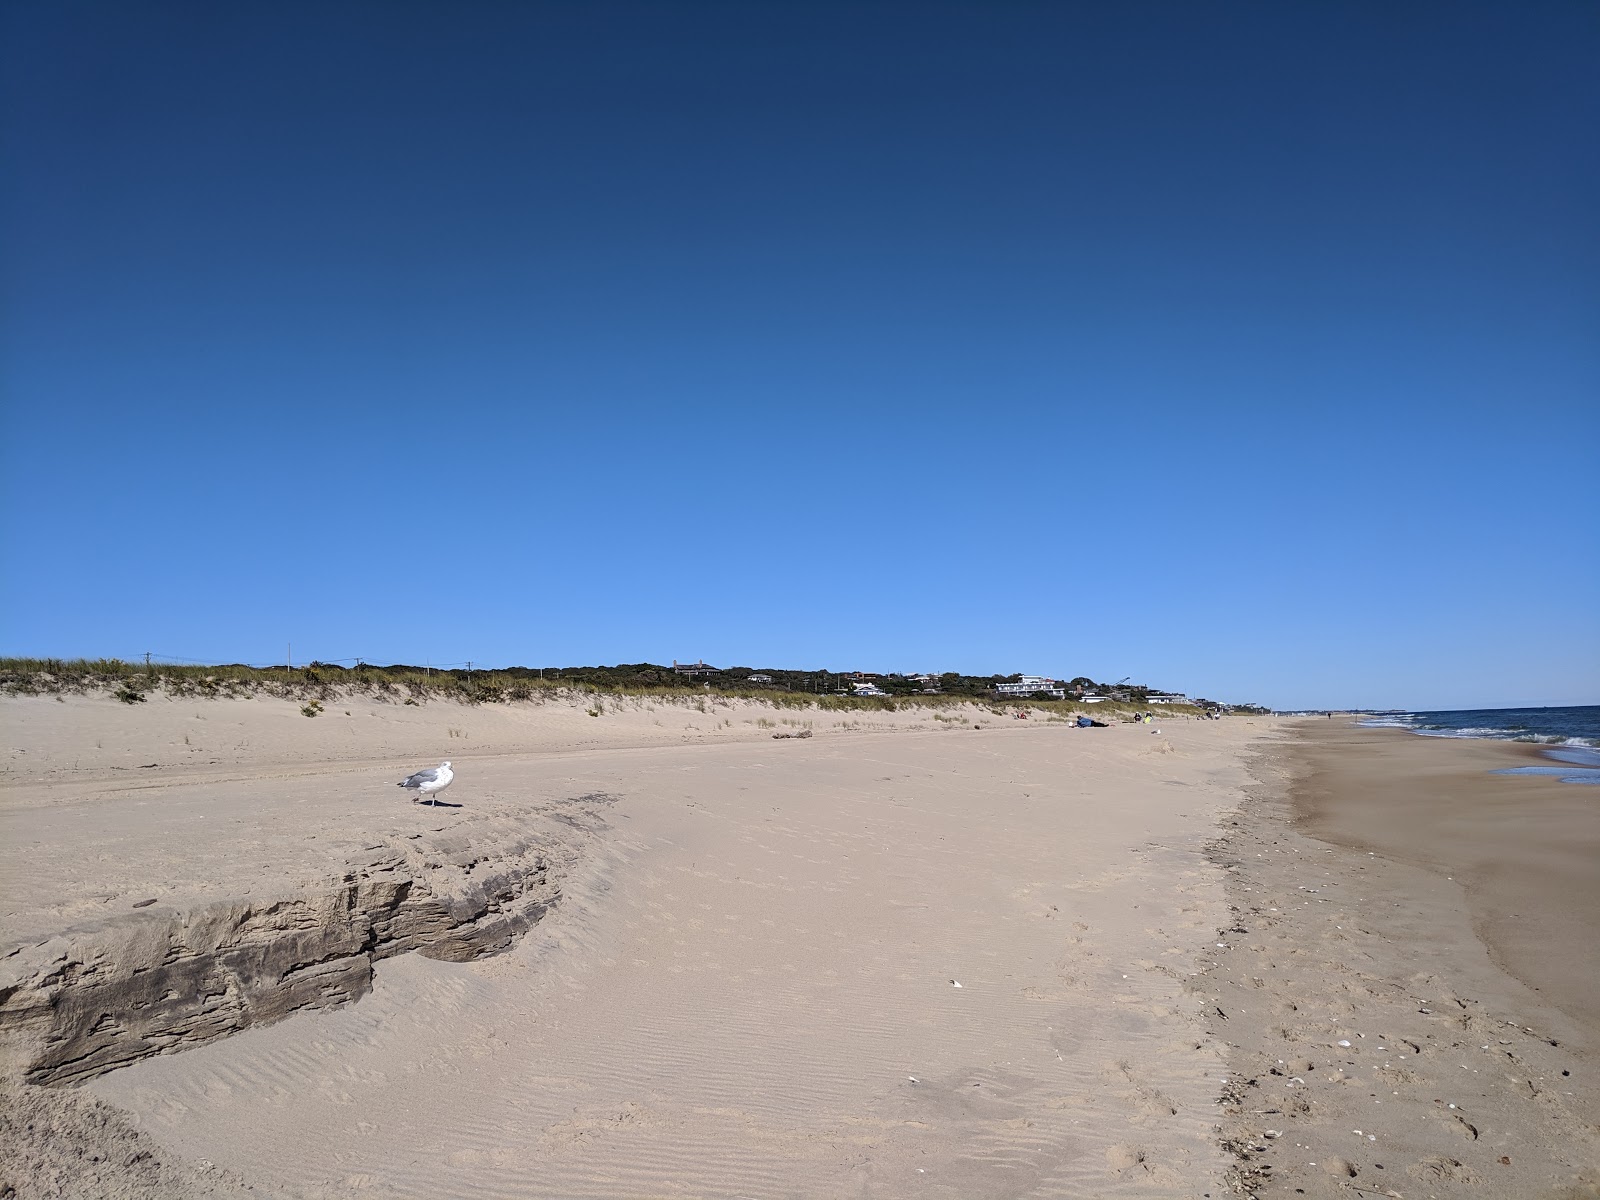 Hither Hills Beach'in fotoğrafı geniş plaj ile birlikte